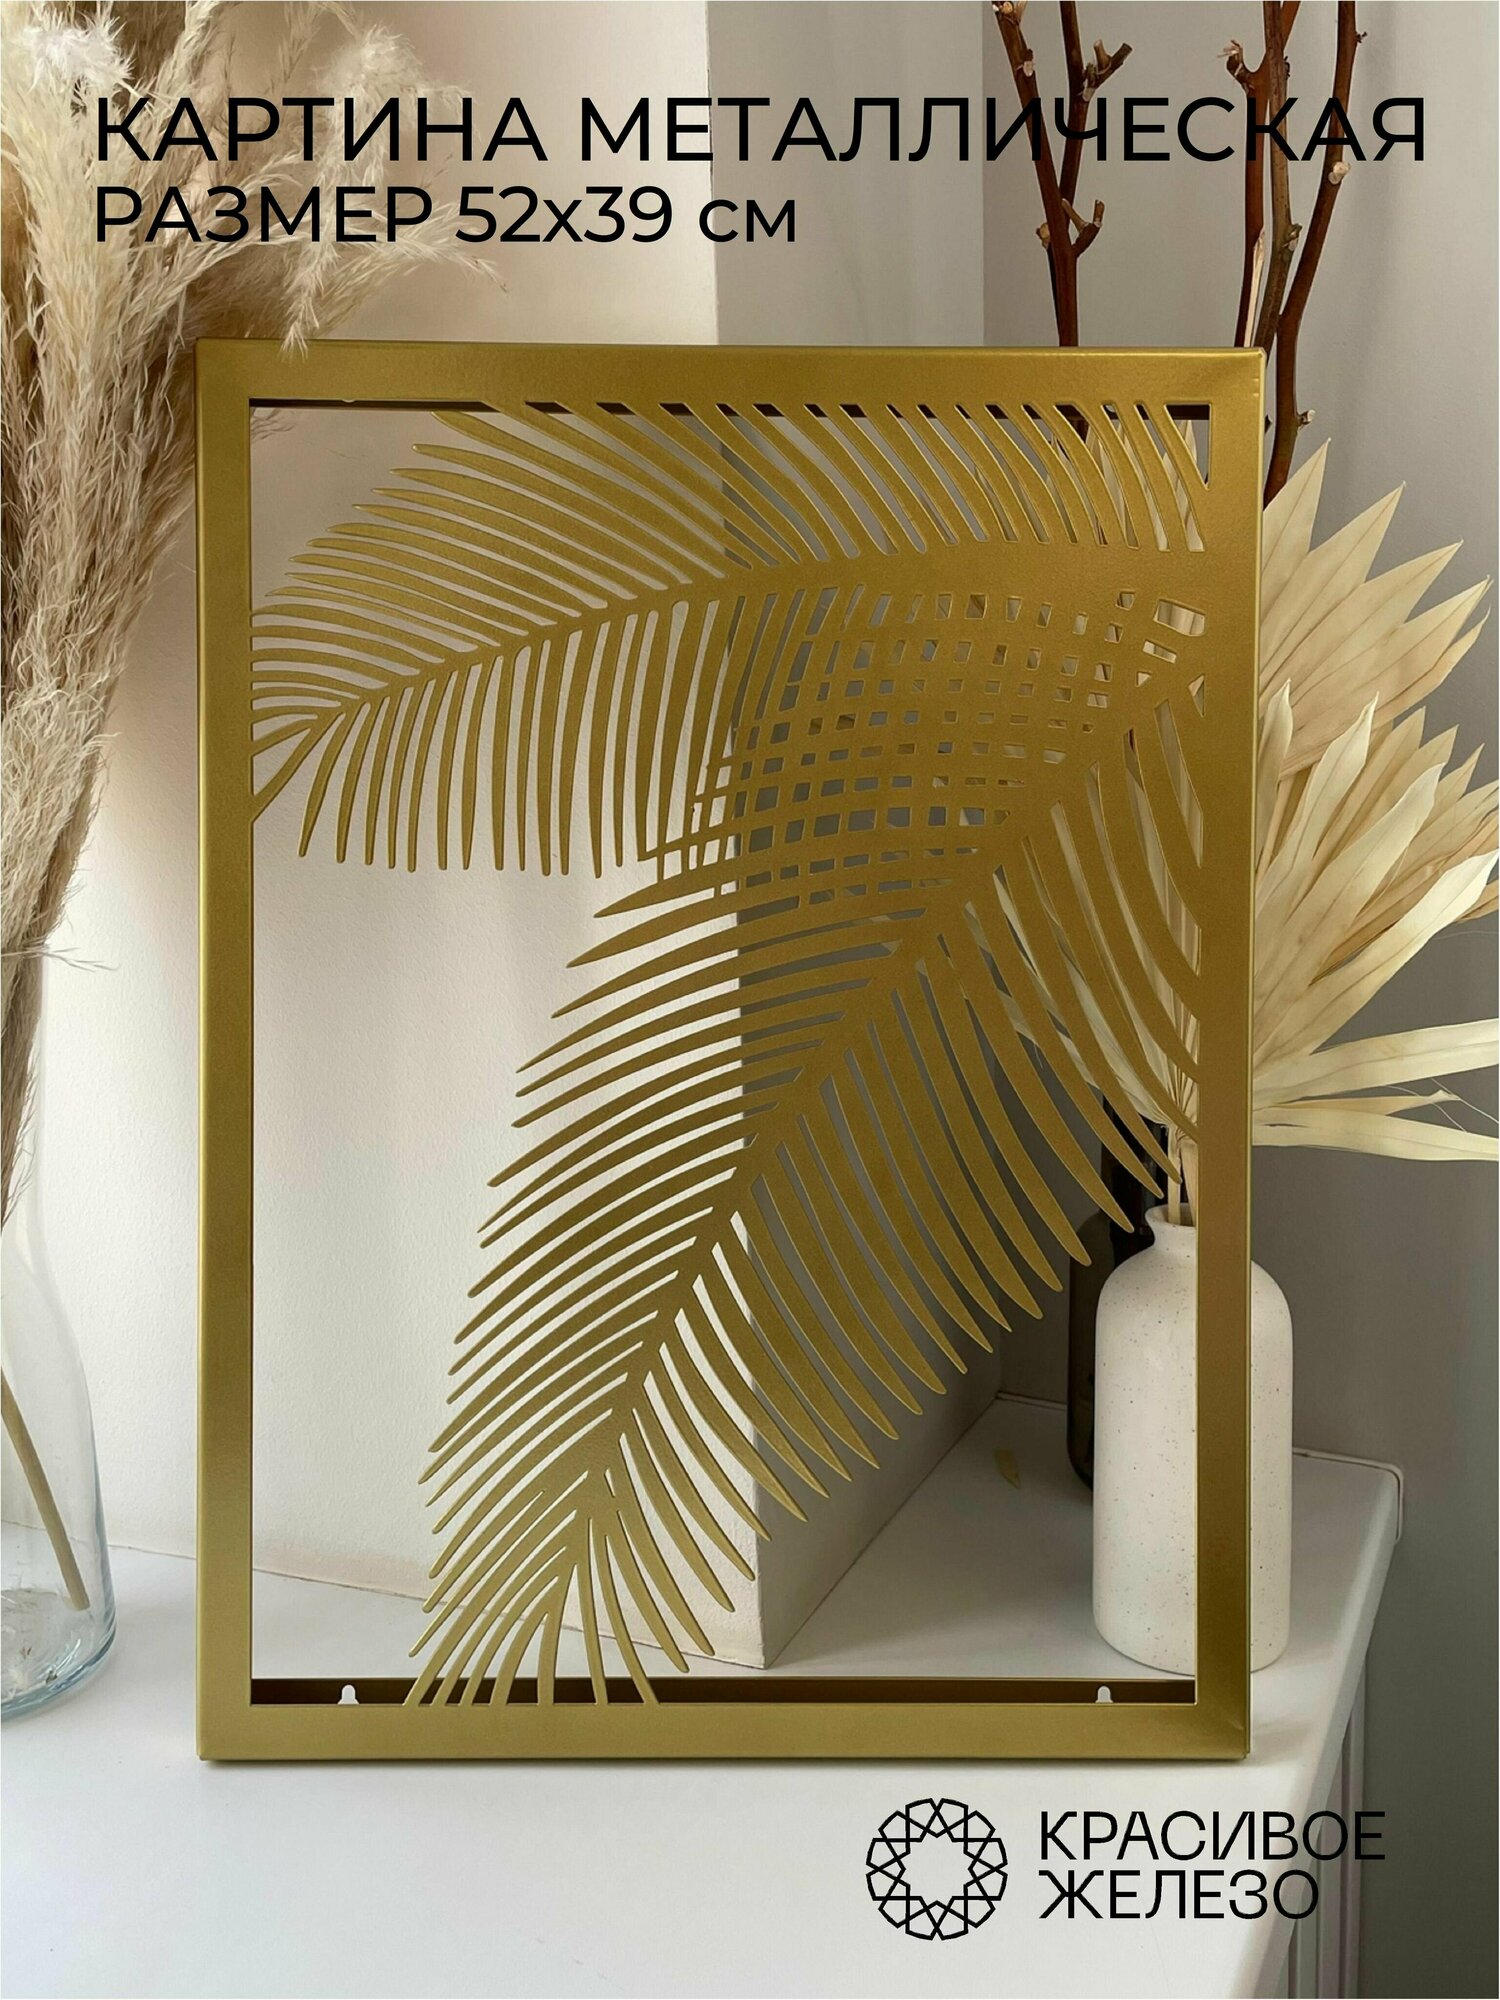 Декоративное панно Красивое железо из металла золотое с листьями пальмы